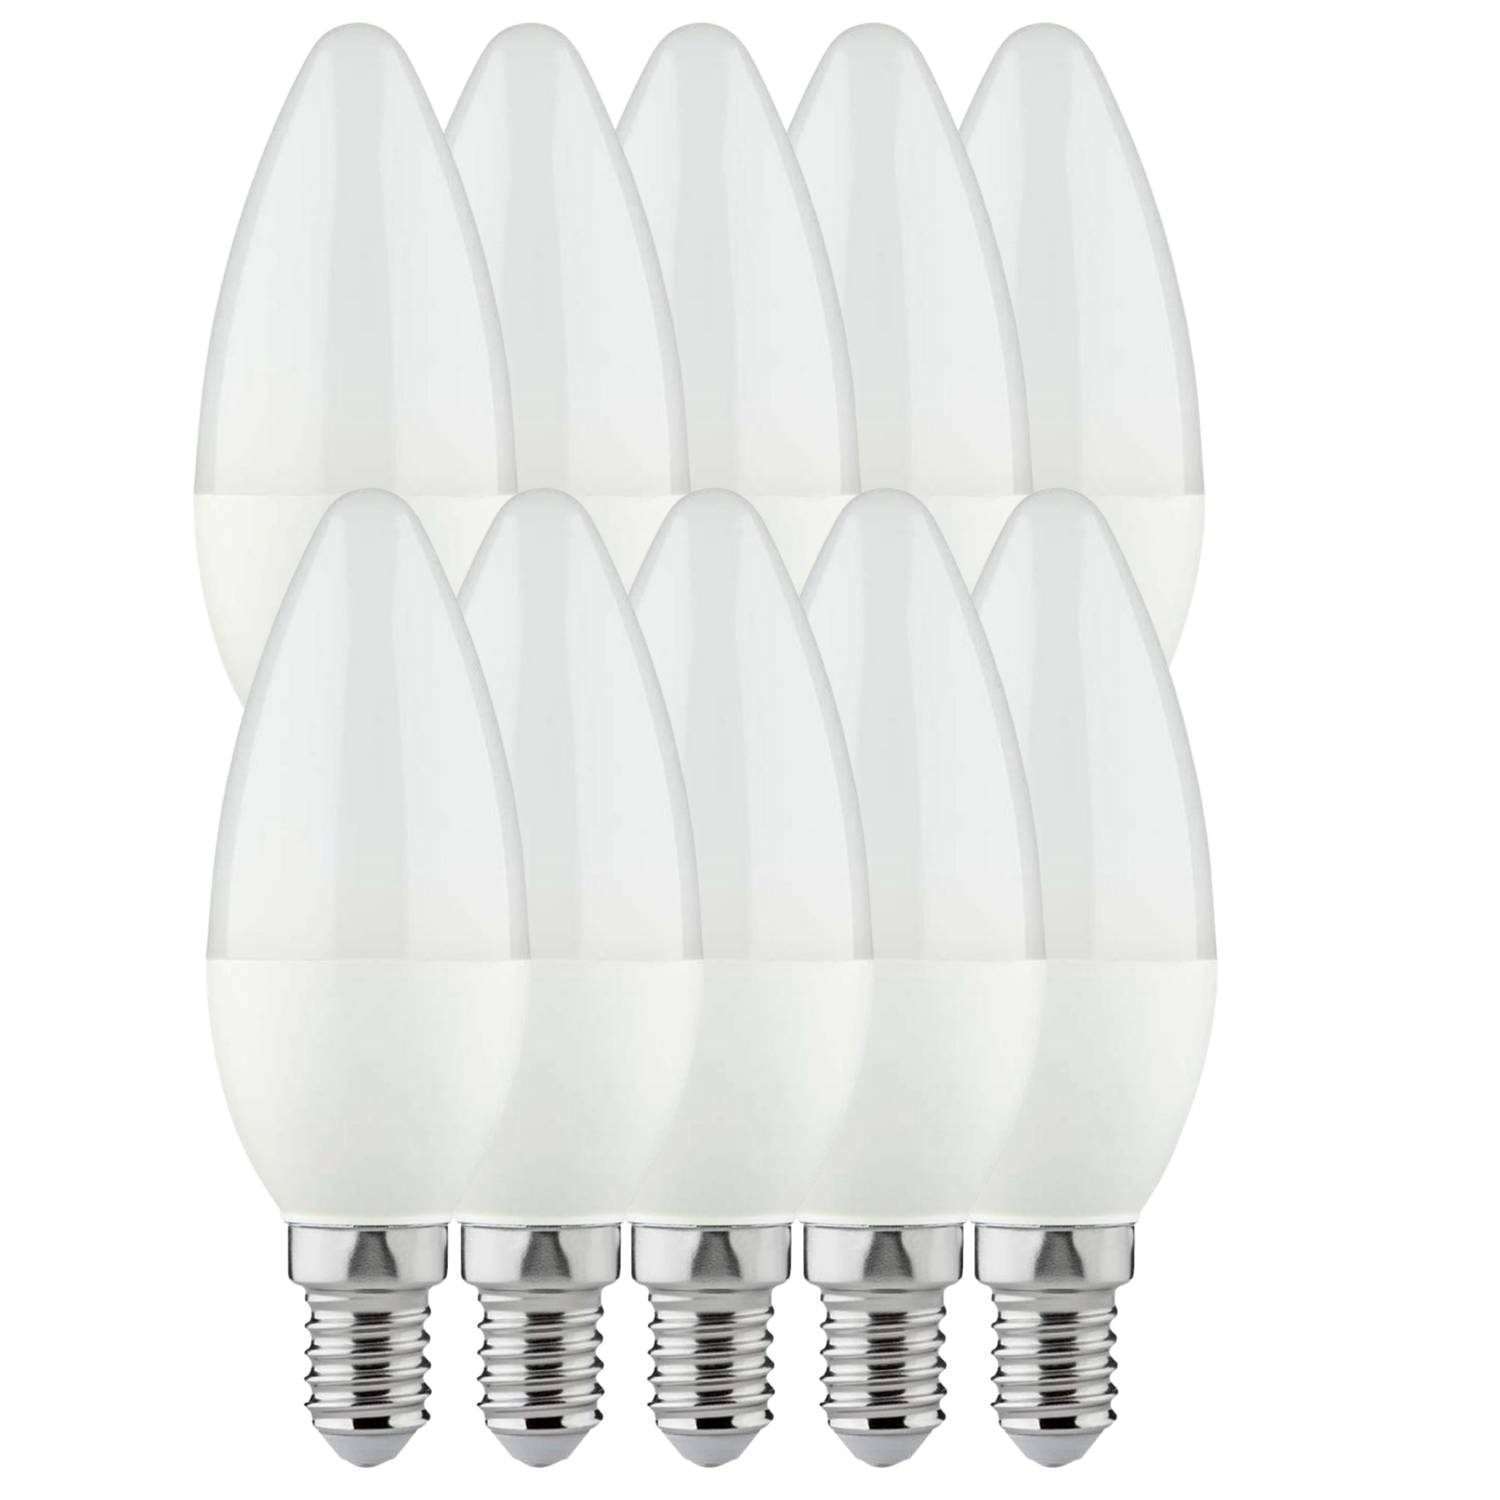 Proventa Longlife LED lampen voordeelverpakking met kleine E14 fitting - Kaars - 10 x LED kaarslamp